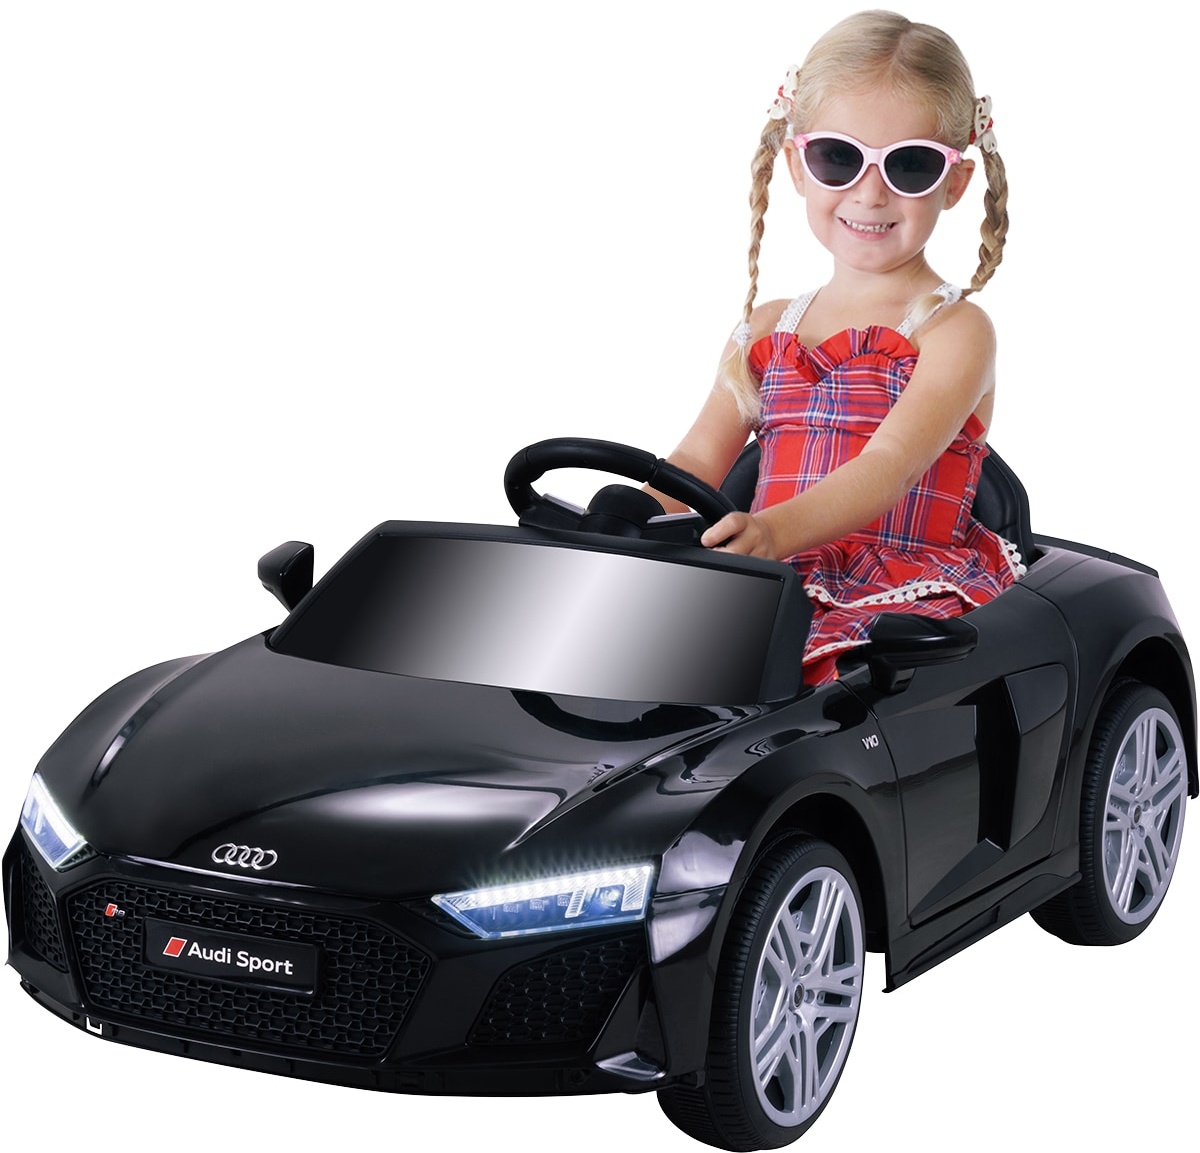 Kinder-Elektroauto Audi R8 Spyder lizenziert, 60 Watt, LED-Scheinwerfer, Musik, Hupe, Fernbedienung, (Schwarz)